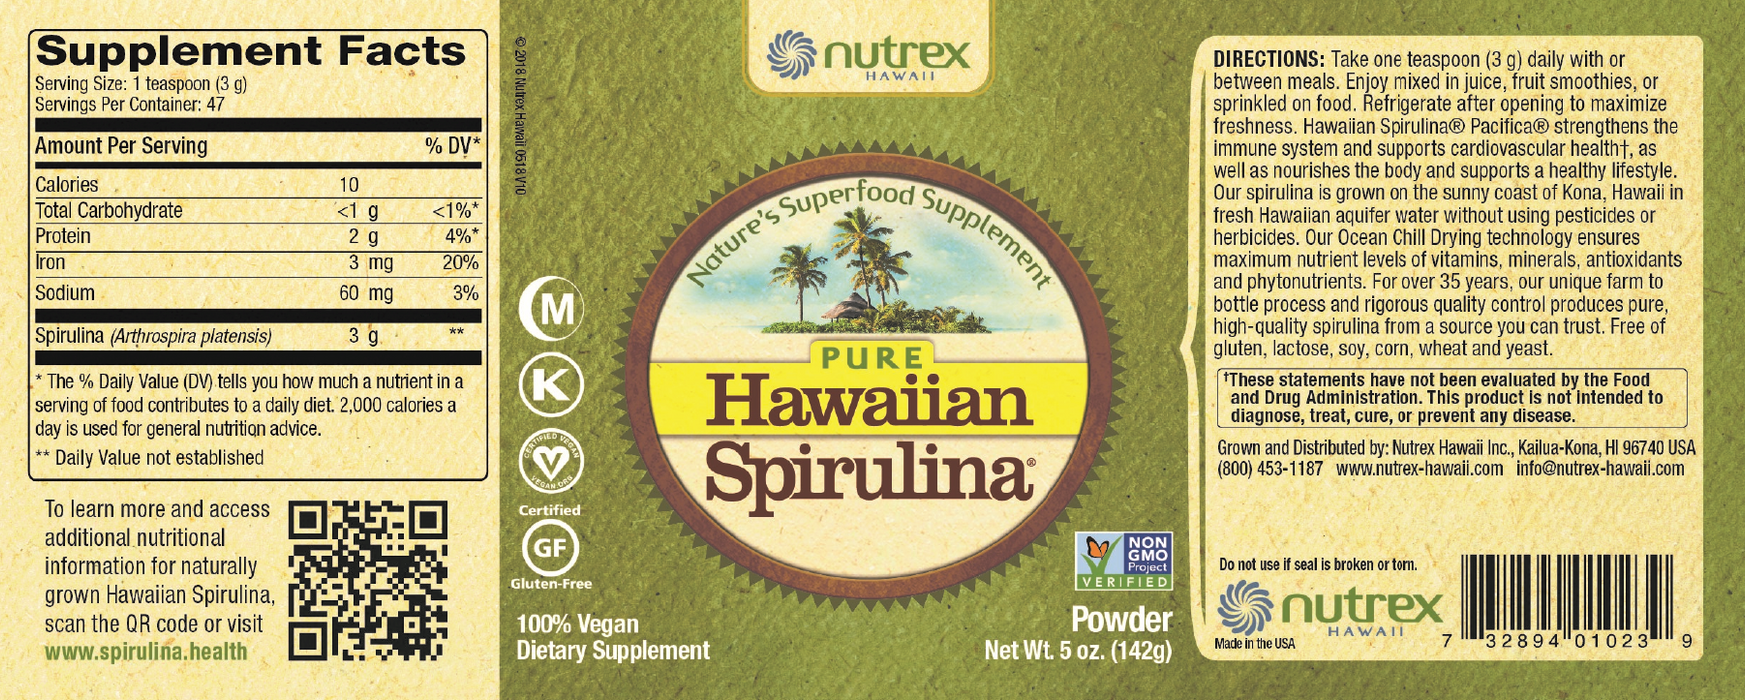 Nutrex Hawaii Hawaiian Spirulina Powder